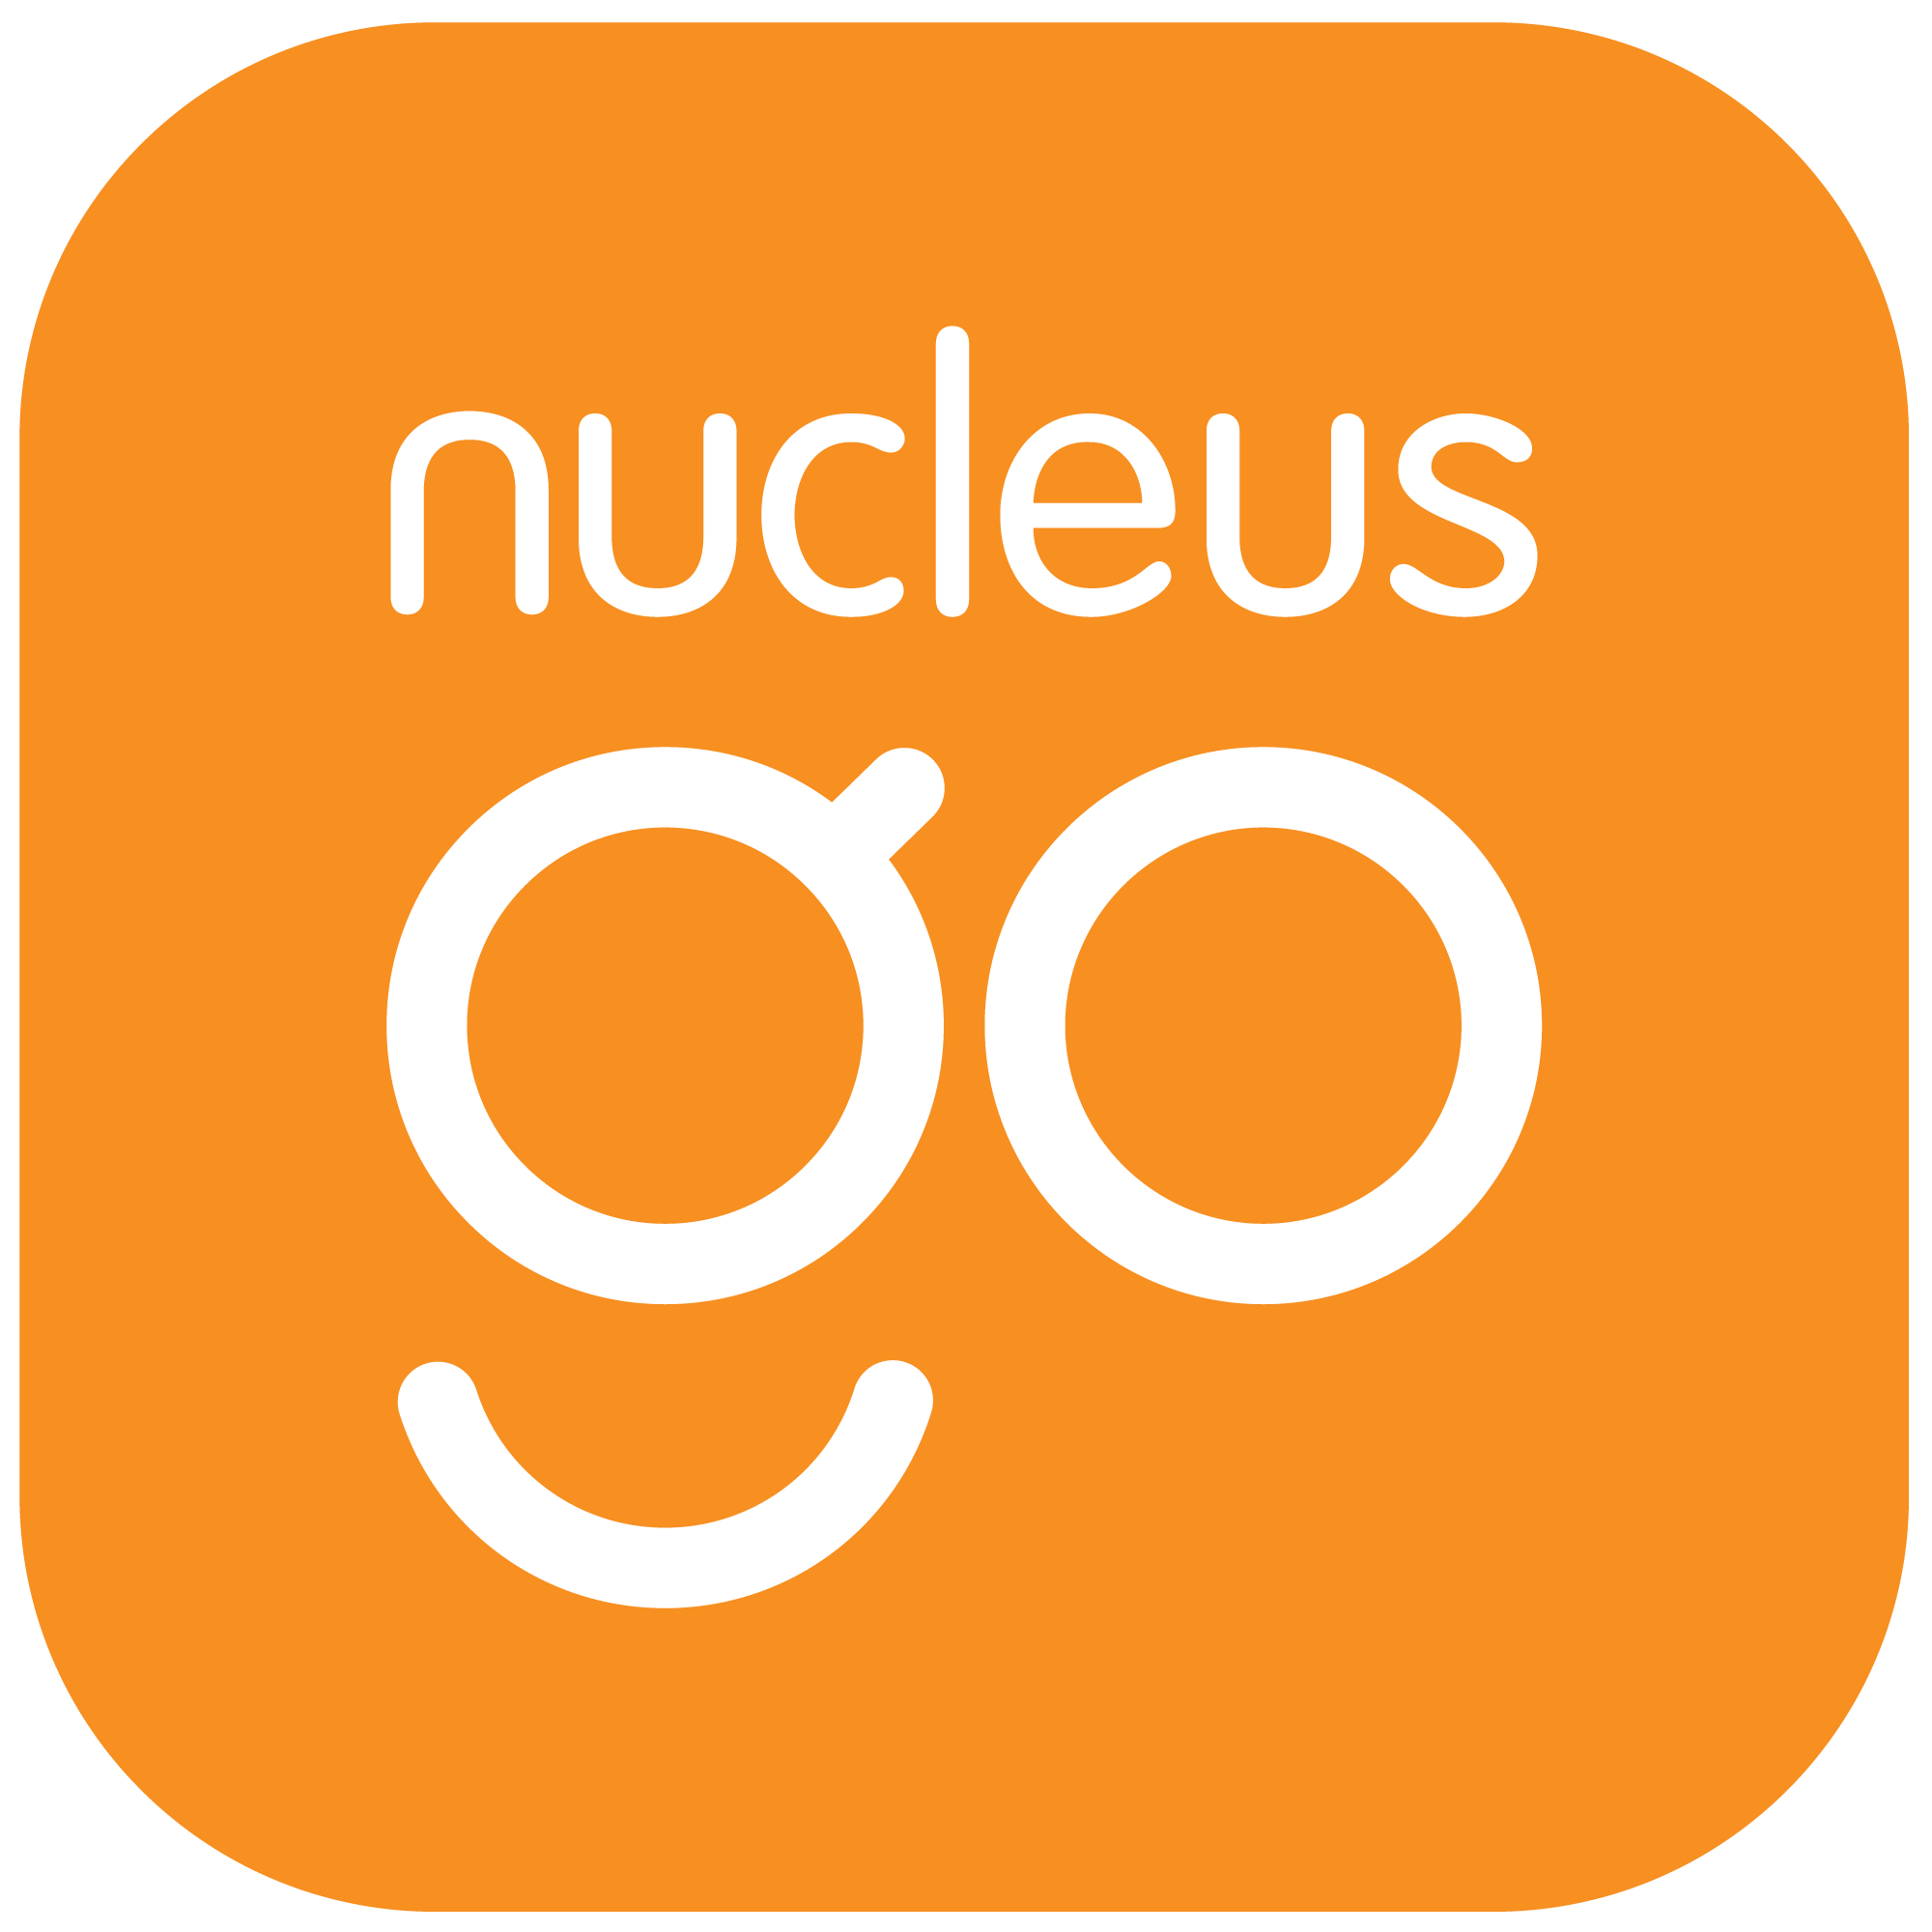 Nucleus Go